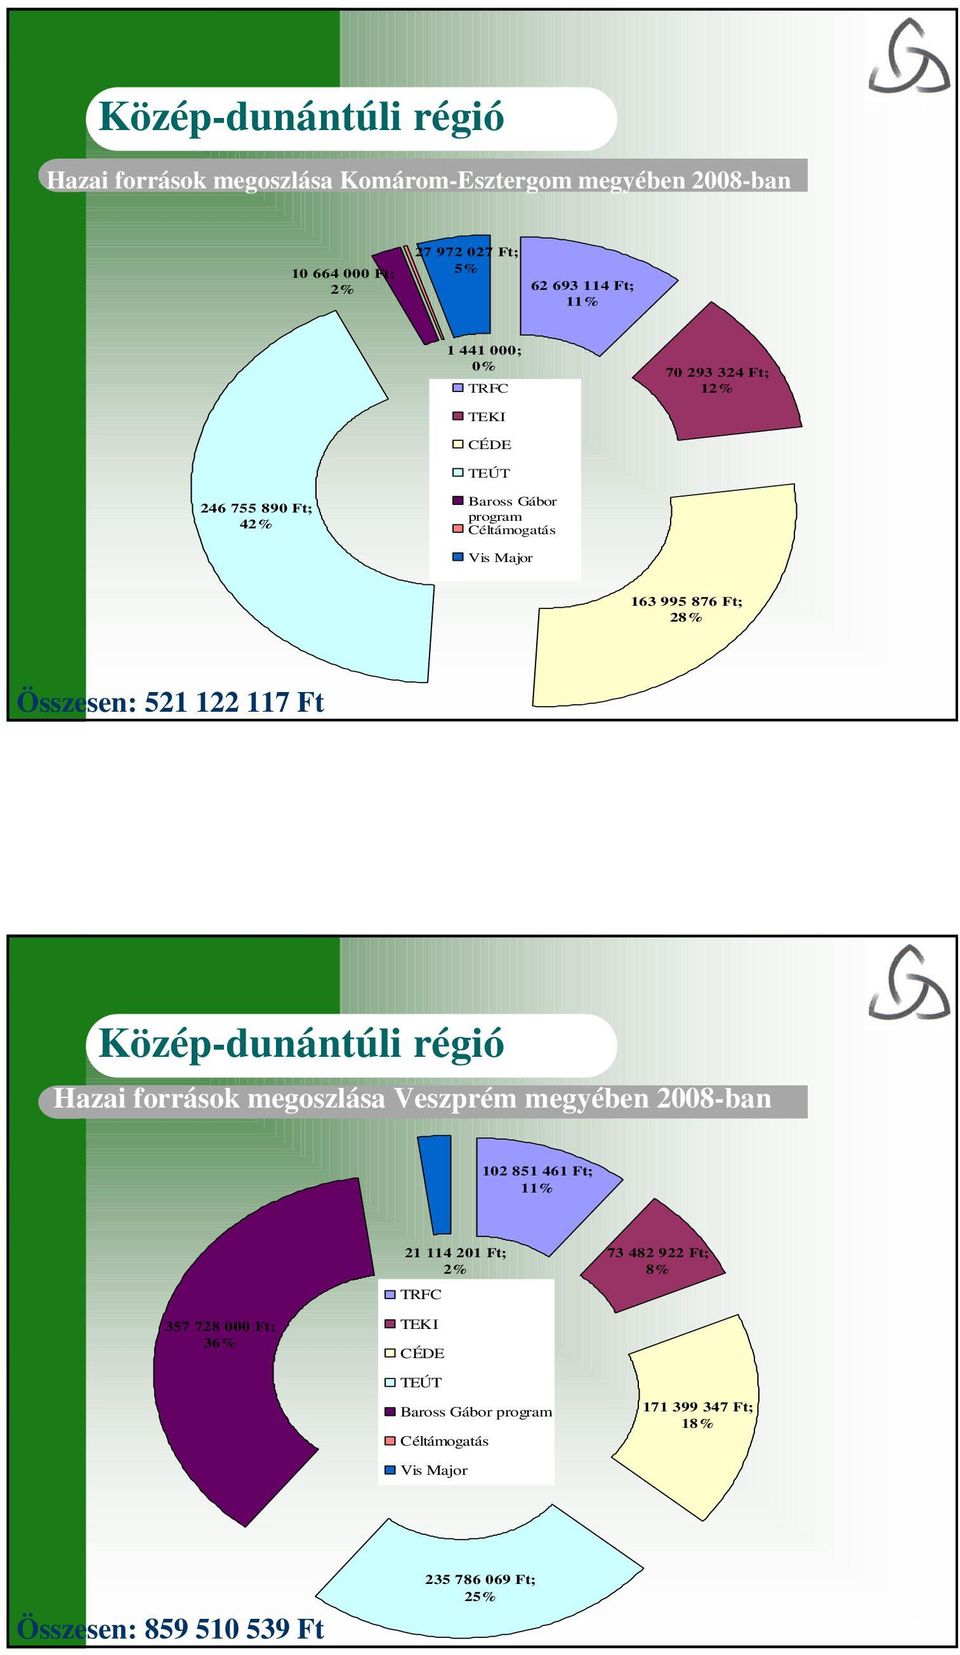 521 122 117 Ft Hazai források megoszlása Veszprém megyében 2008-ban 102 851 461 Ft; 11% 357 728 000 Ft; 36% 21 114 201 Ft; 2% TRFC